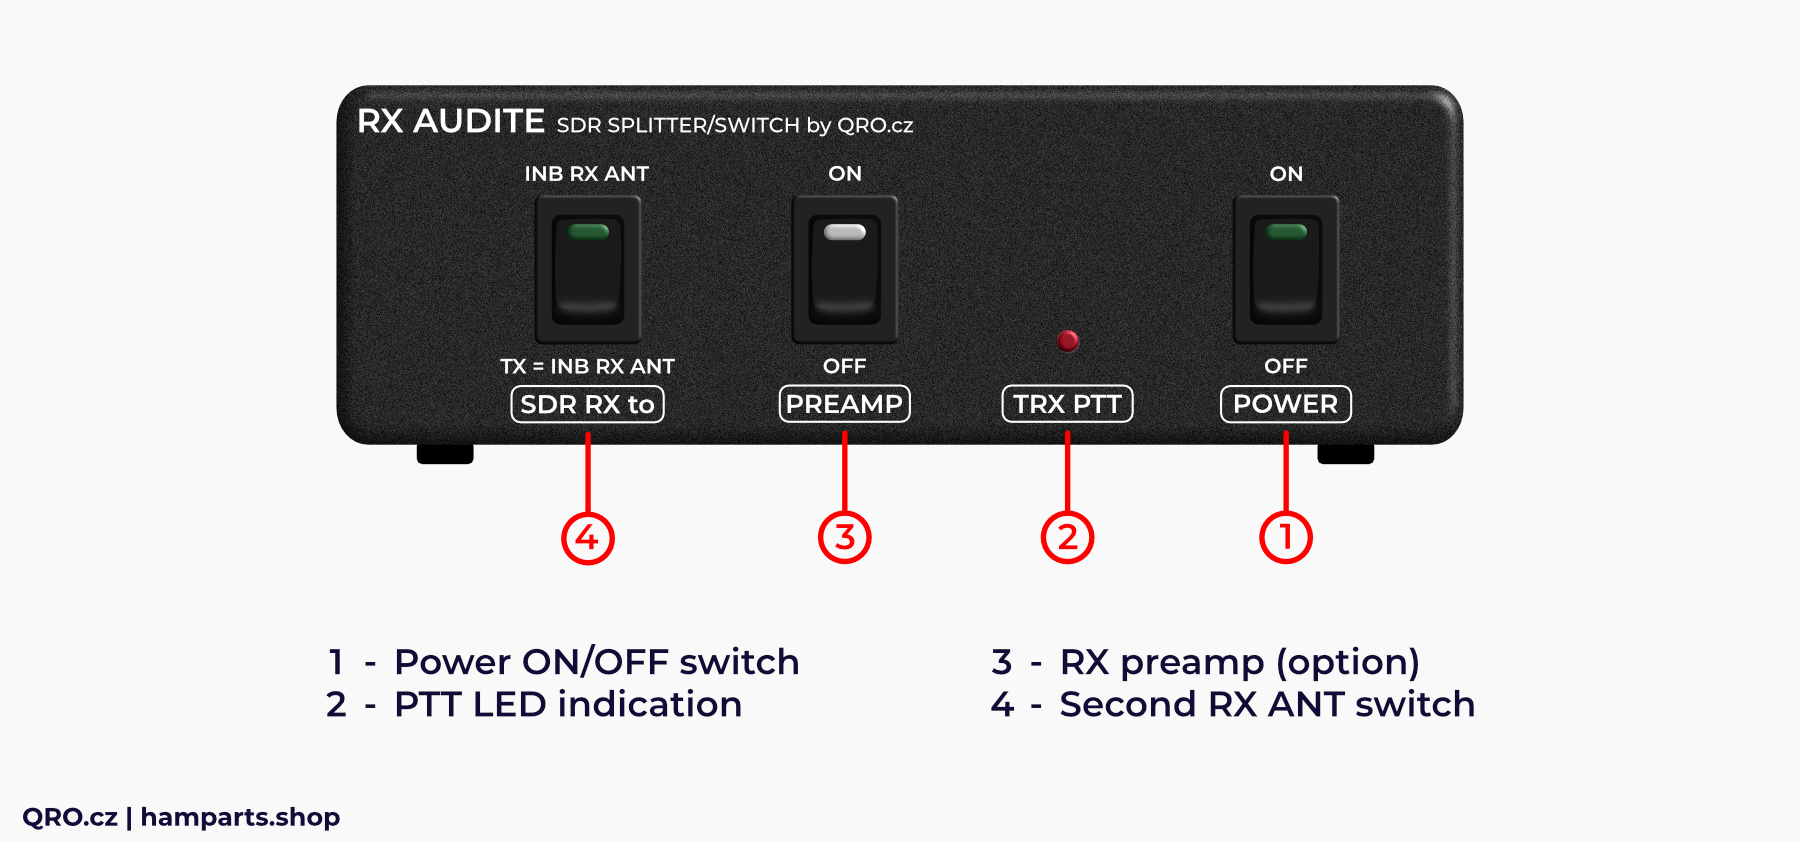 rx audite sdr switch description front panel qro.cz hamparts.shop